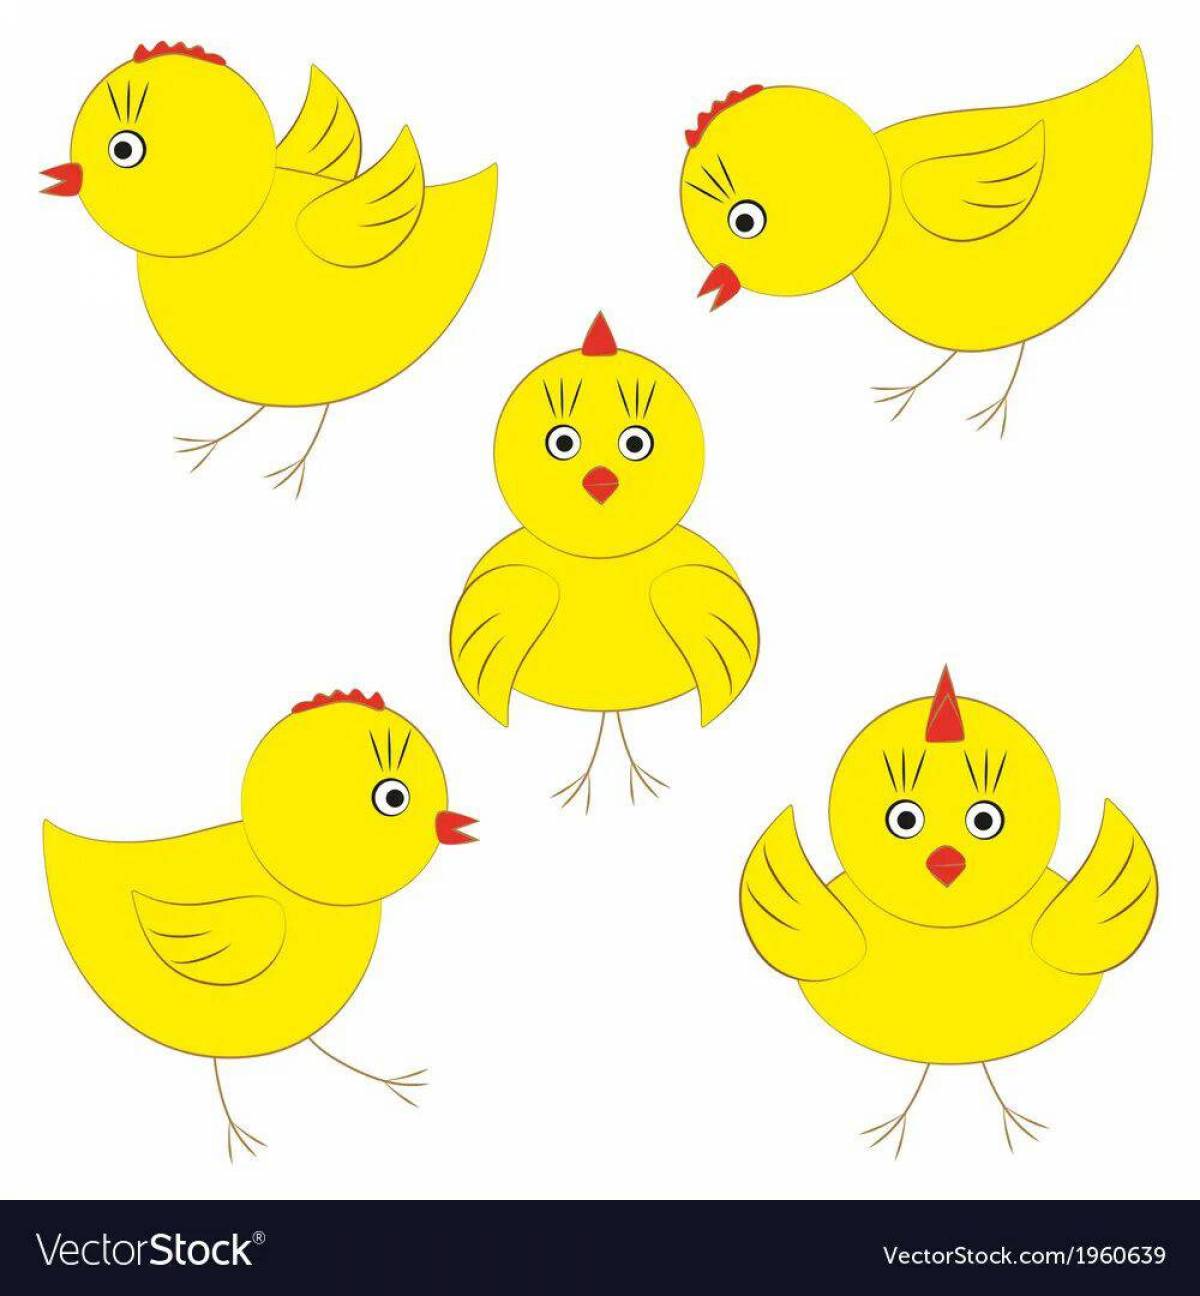 Раскраски с цыпленком: распечатать или скачать бесплатно | internat-mednogorsk.ru